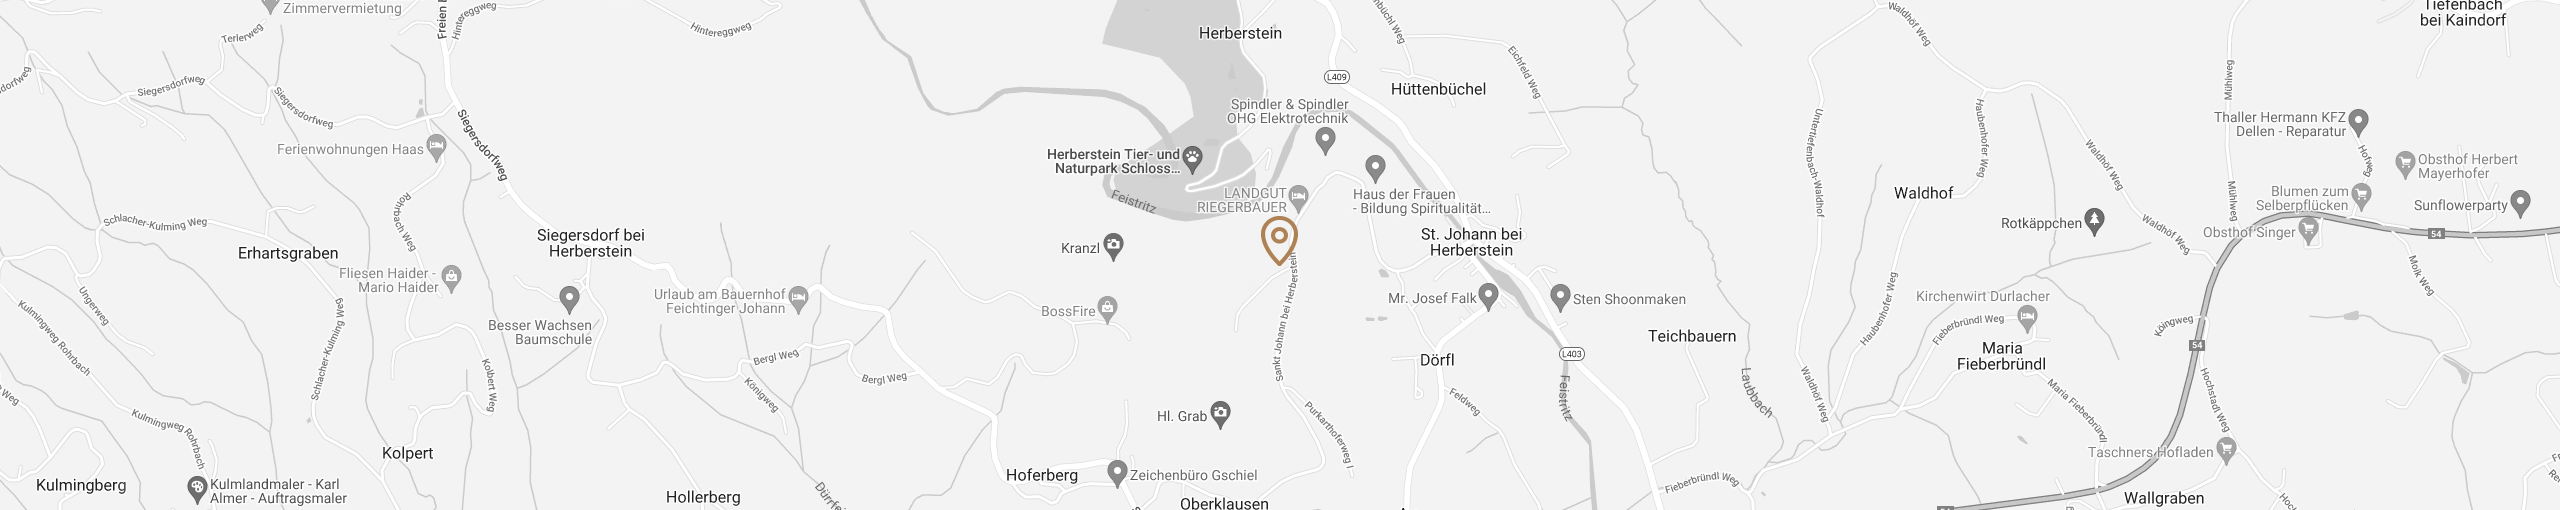 Tischlerei Kröpfl auf Google Maps